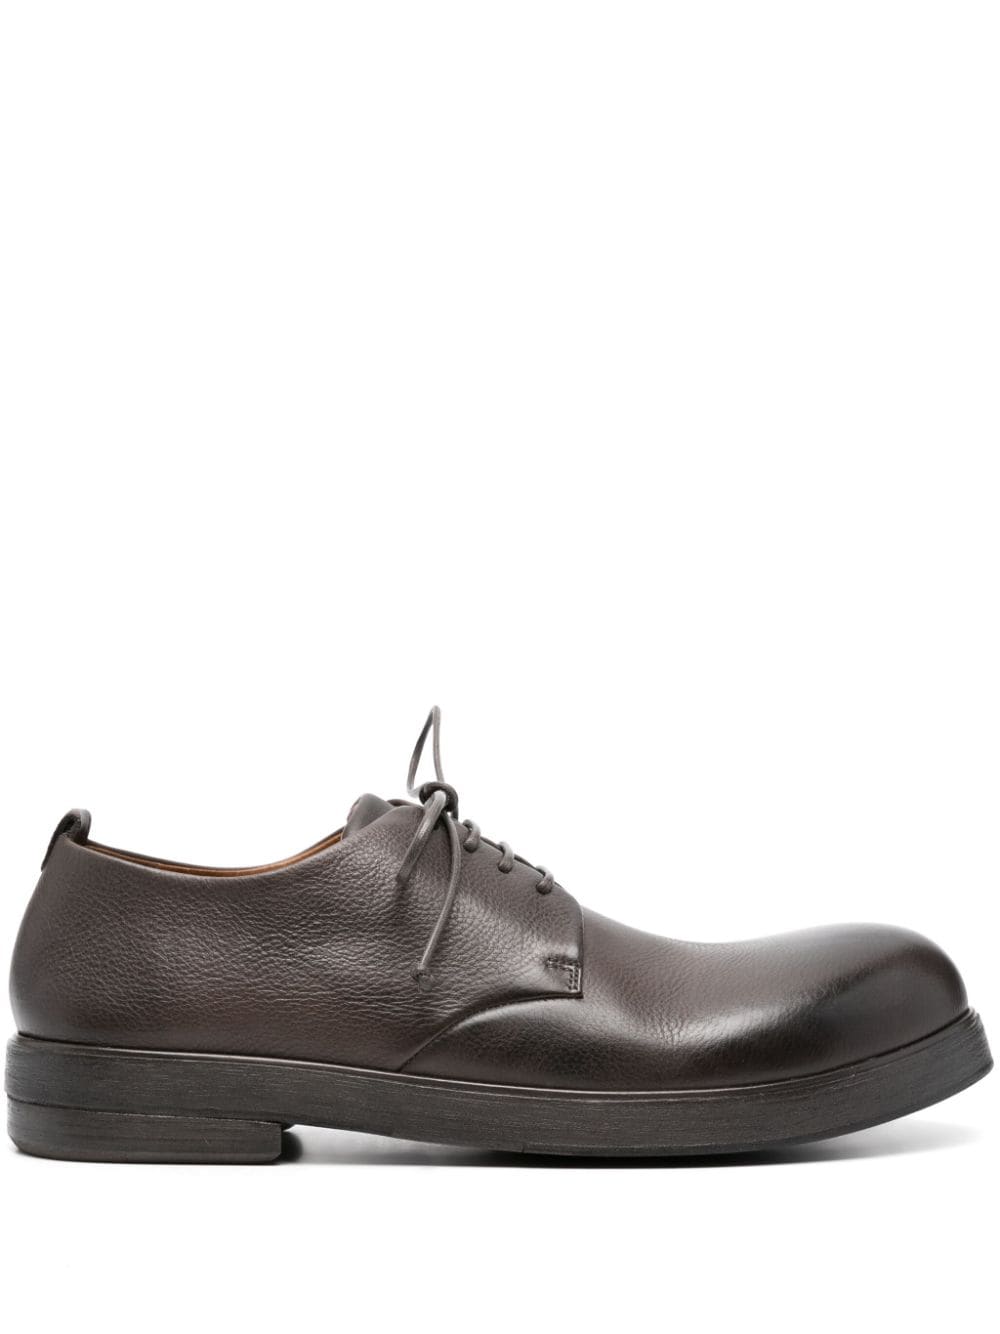 Marsèll Zucca Zeppa 35mm leather derby shoes - Brown von Marsèll